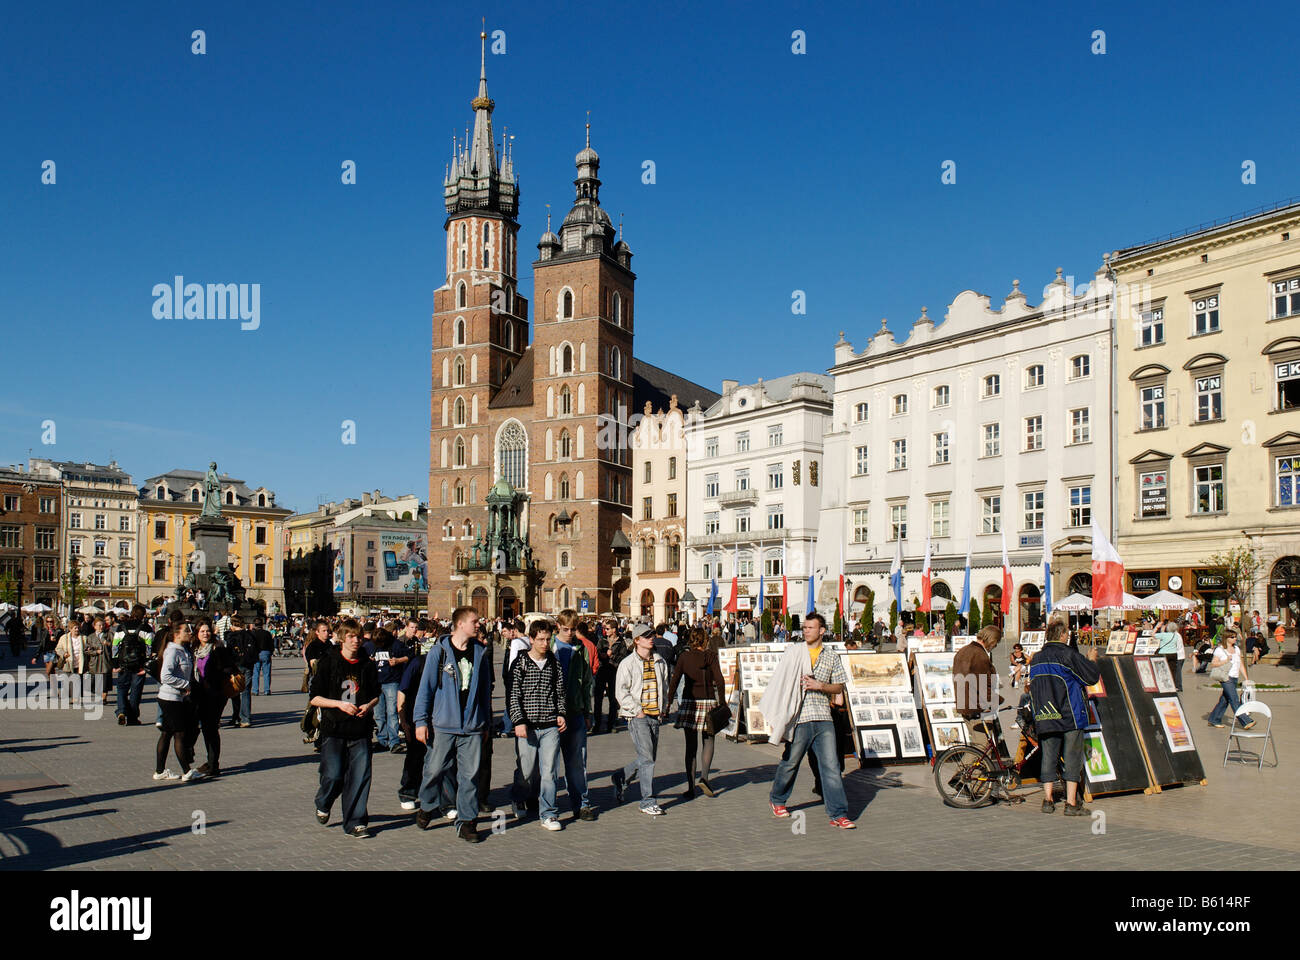 Str. Marys Kirche in der Rynek, market Square von Krakau, UNESCO-Weltkulturerbe, Polen, Europa Stockfoto